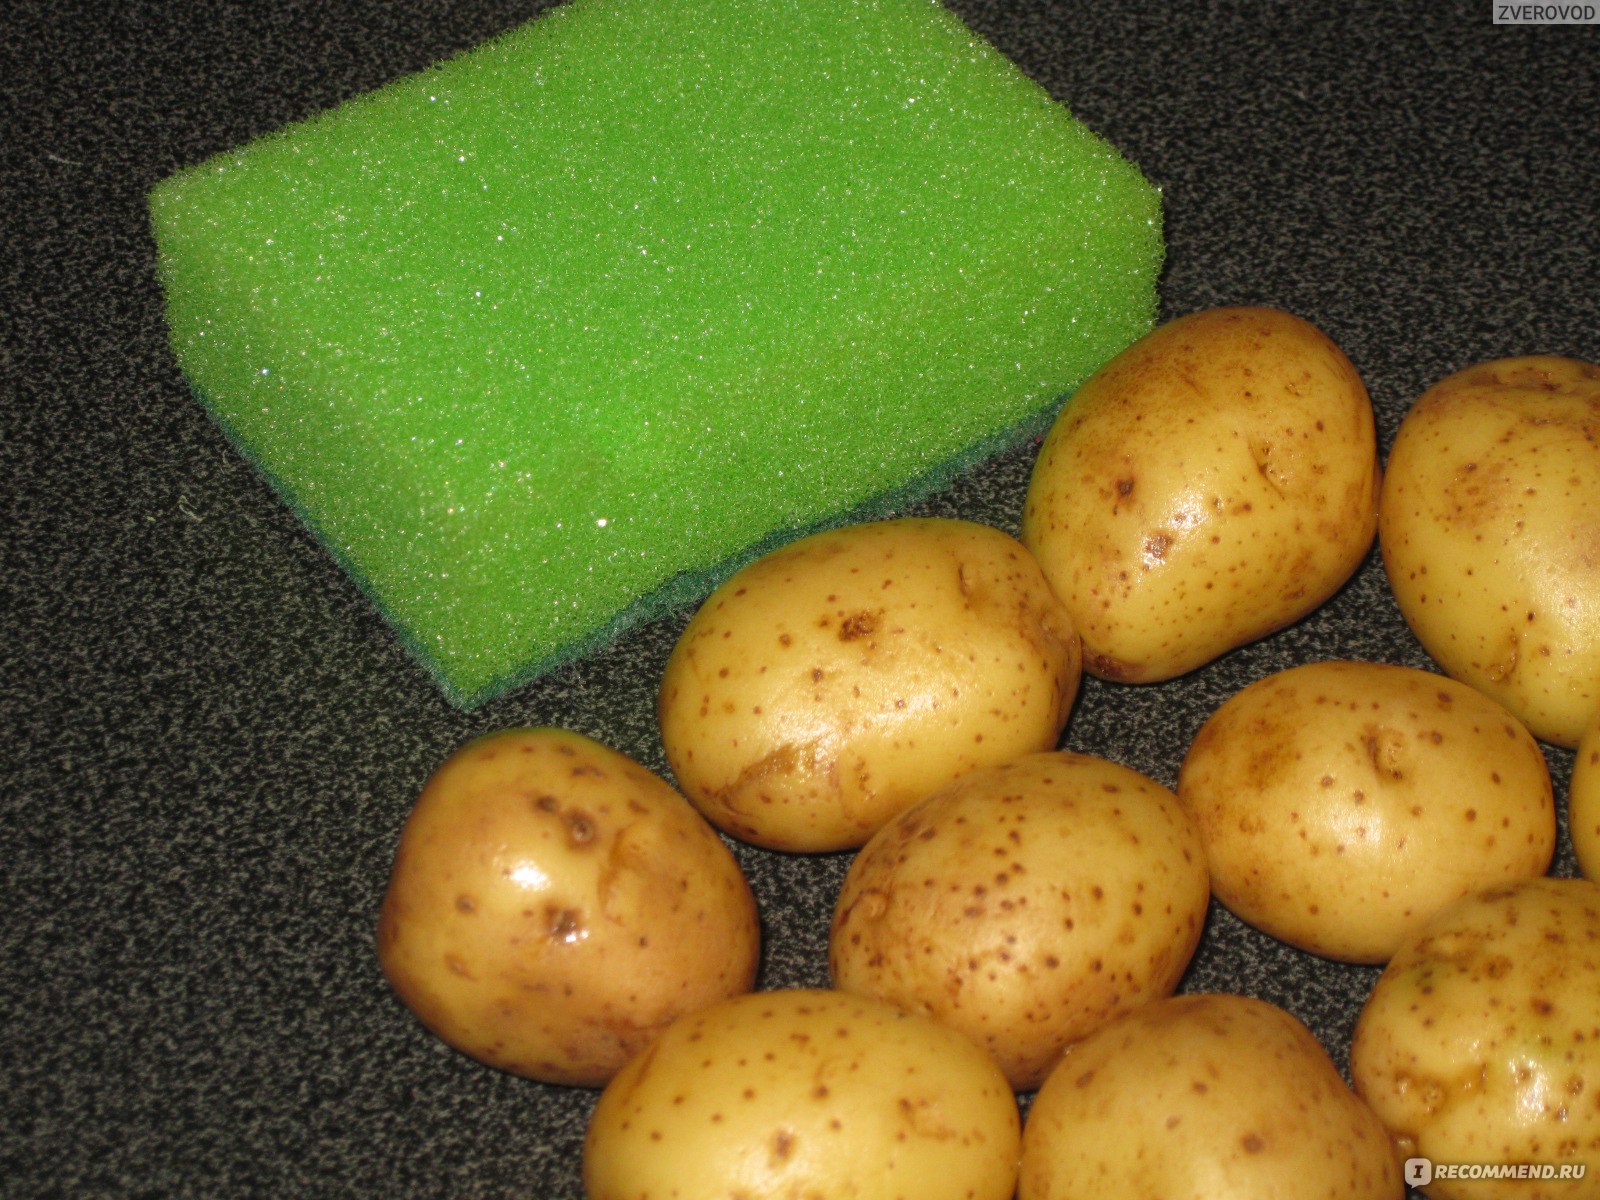 Коломенские продукты картофель